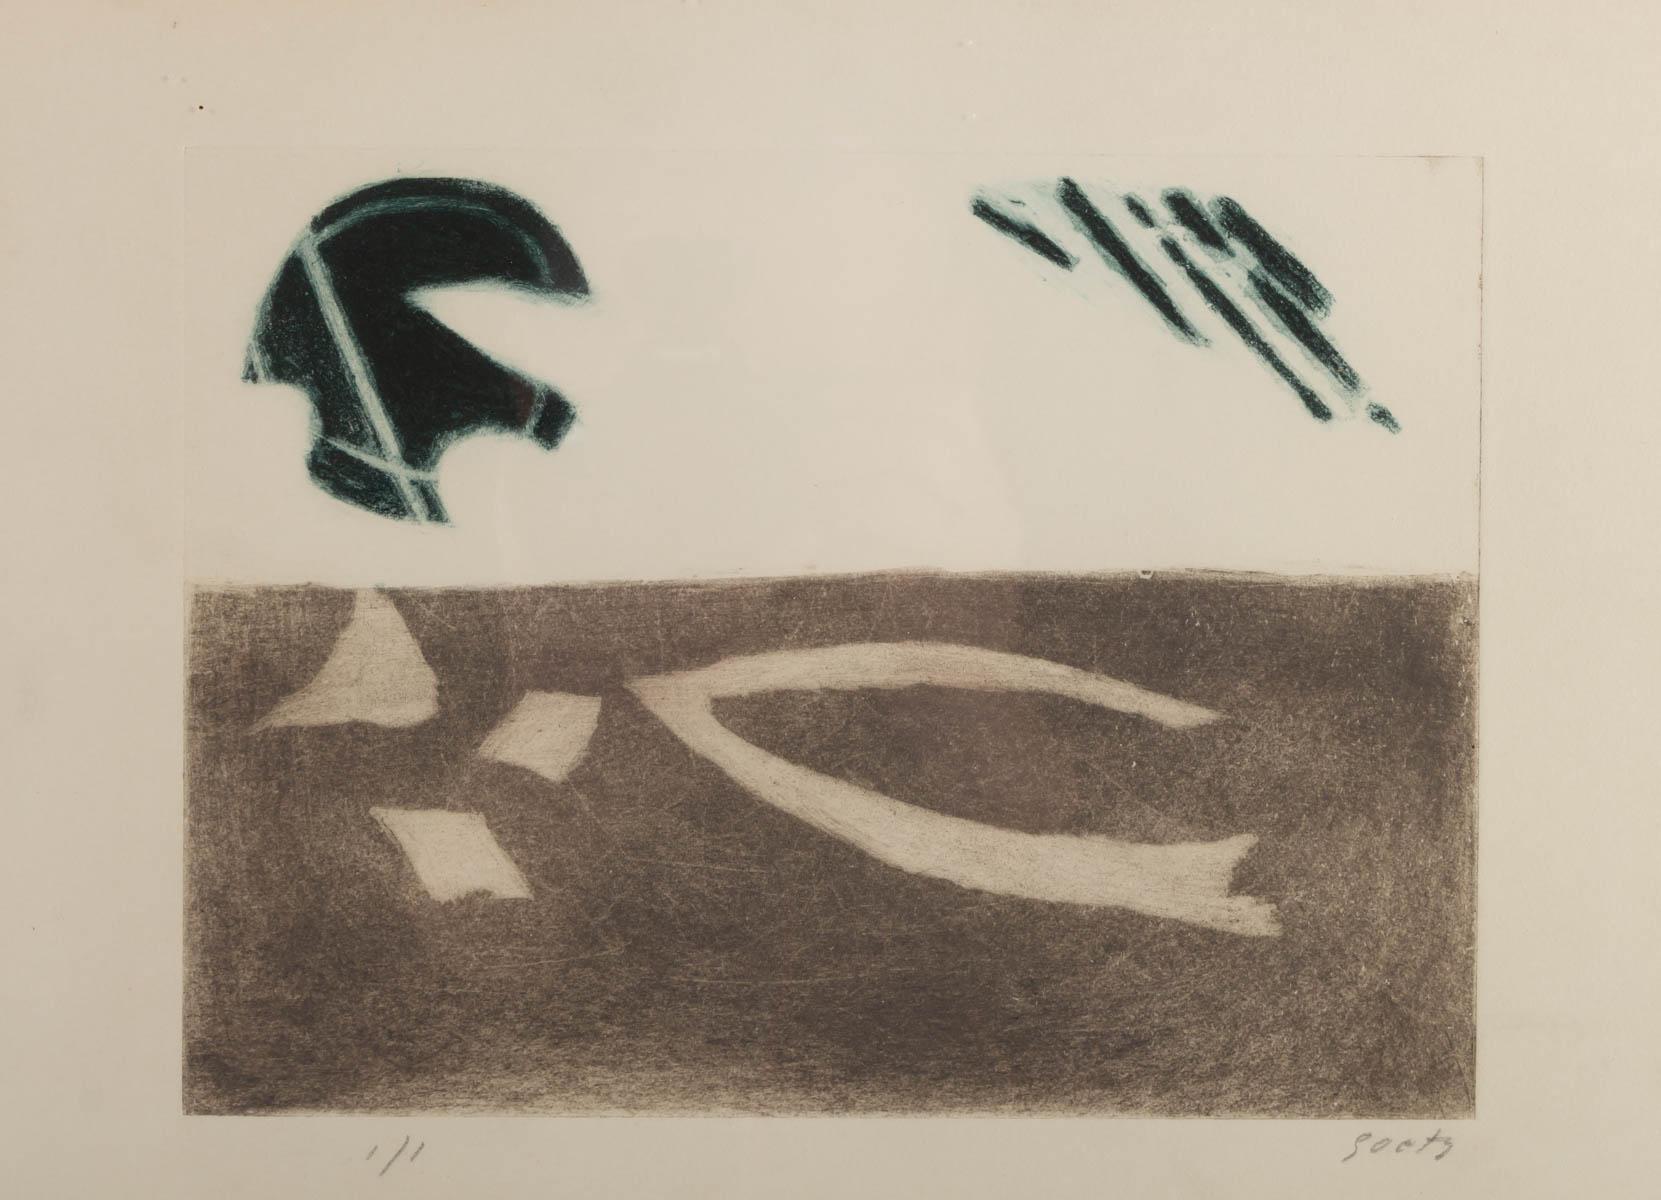 Lithographie par Henri Goetz, 75/100, signée.
Mesures : H 41,5 cm, L 51,5 cm, l 1 cm.